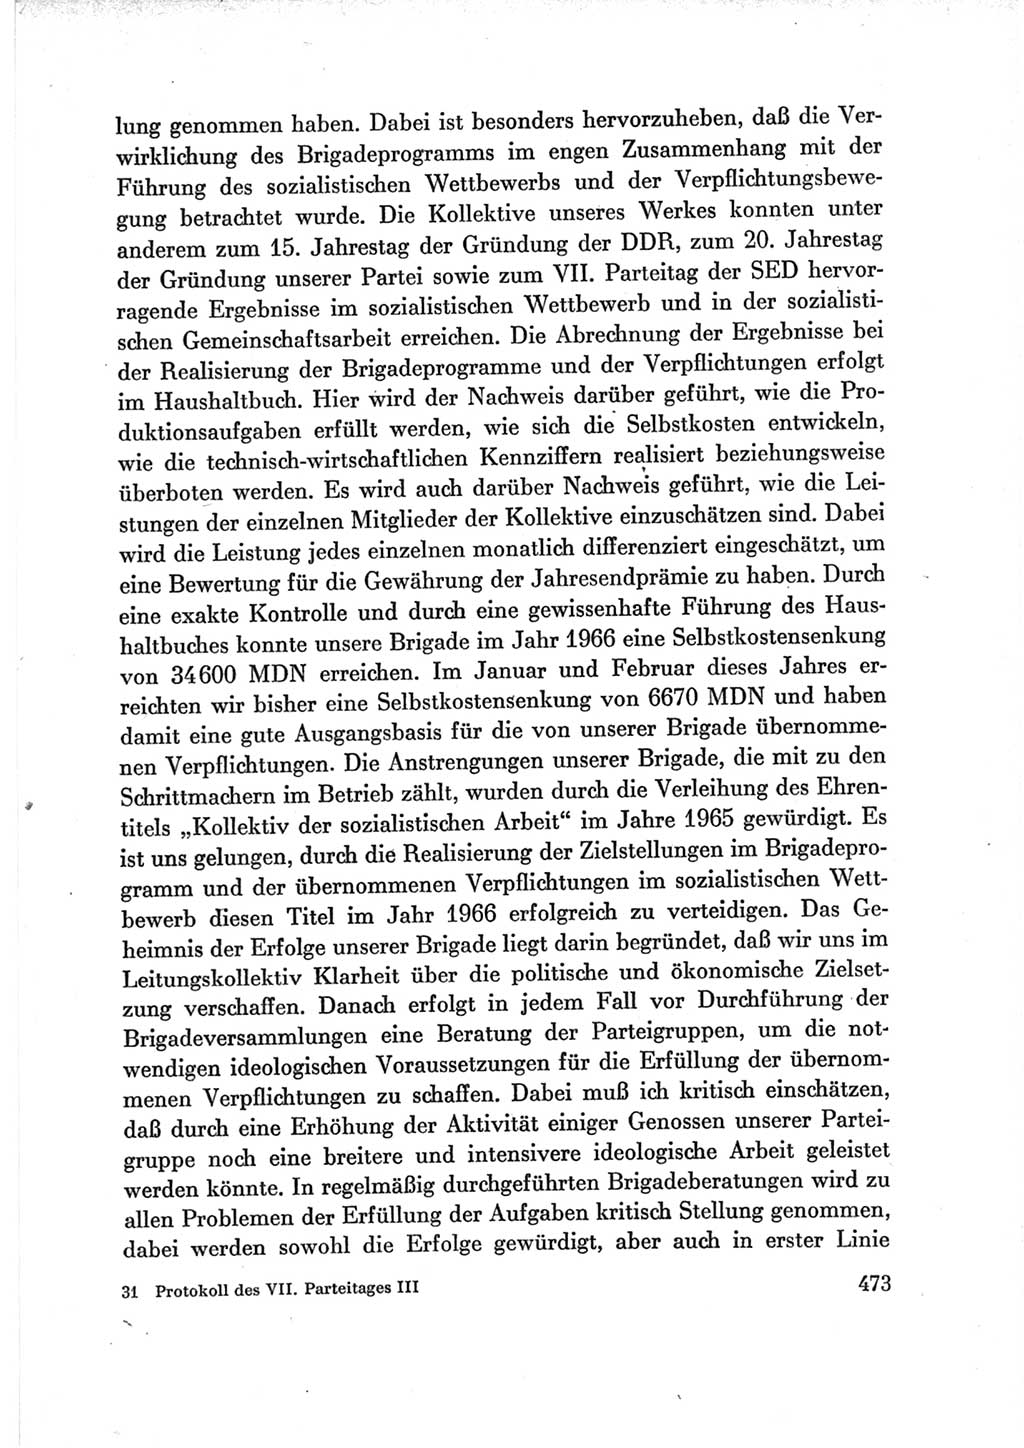 Protokoll der Verhandlungen des Ⅶ. Parteitages der Sozialistischen Einheitspartei Deutschlands (SED) [Deutsche Demokratische Republik (DDR)] 1967, Band Ⅲ, Seite 473 (Prot. Verh. Ⅶ. PT SED DDR 1967, Bd. Ⅲ, S. 473)